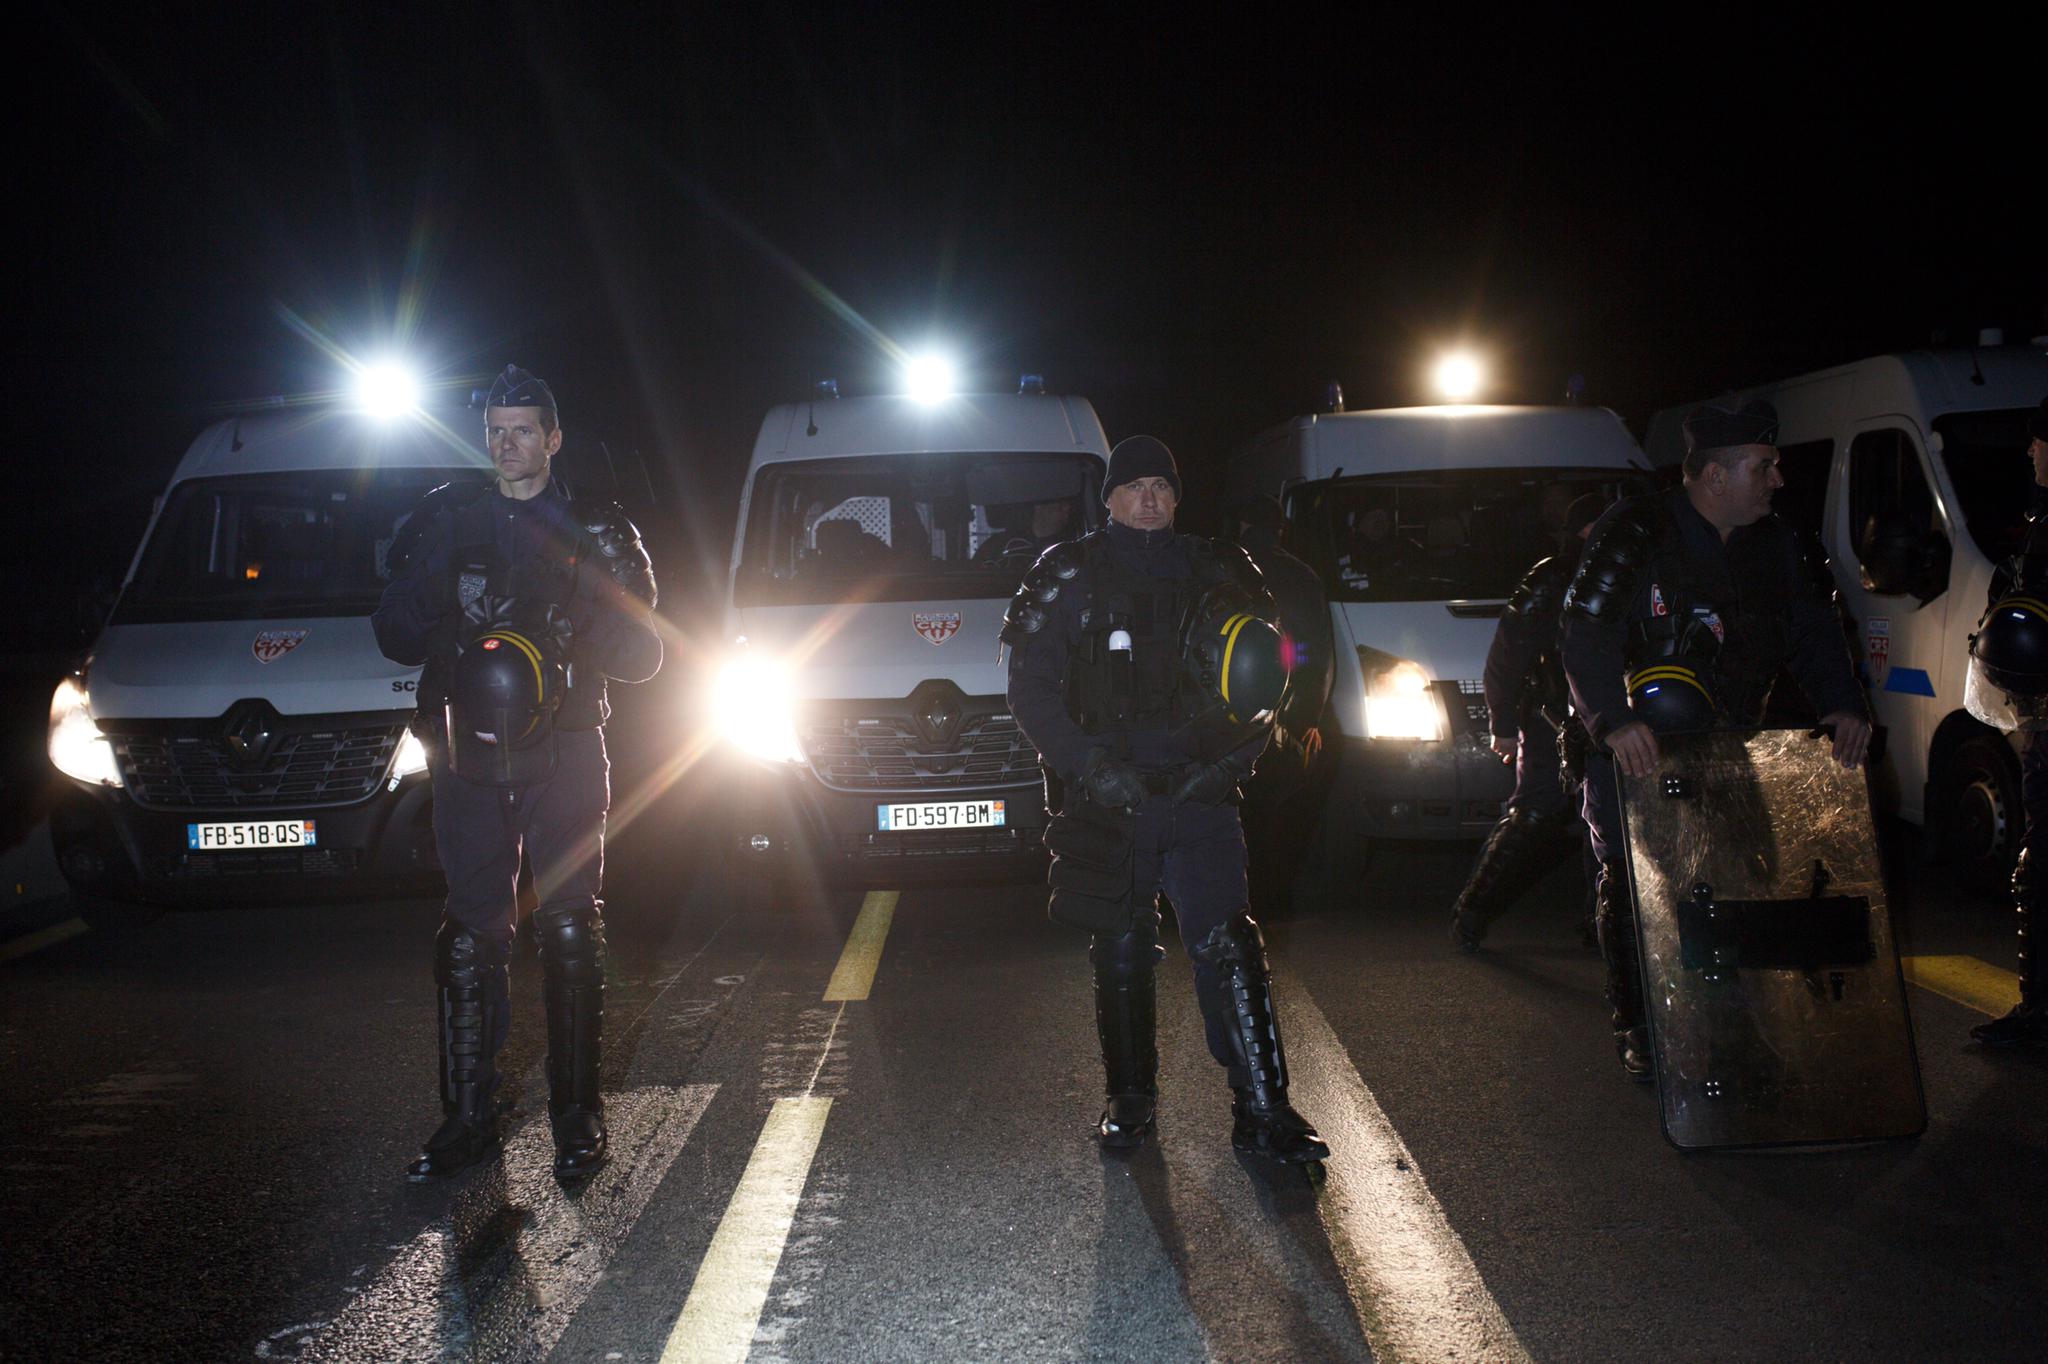 Espanya pressiona per desallotjar l'autopista i la Gendarmeria guanya temps